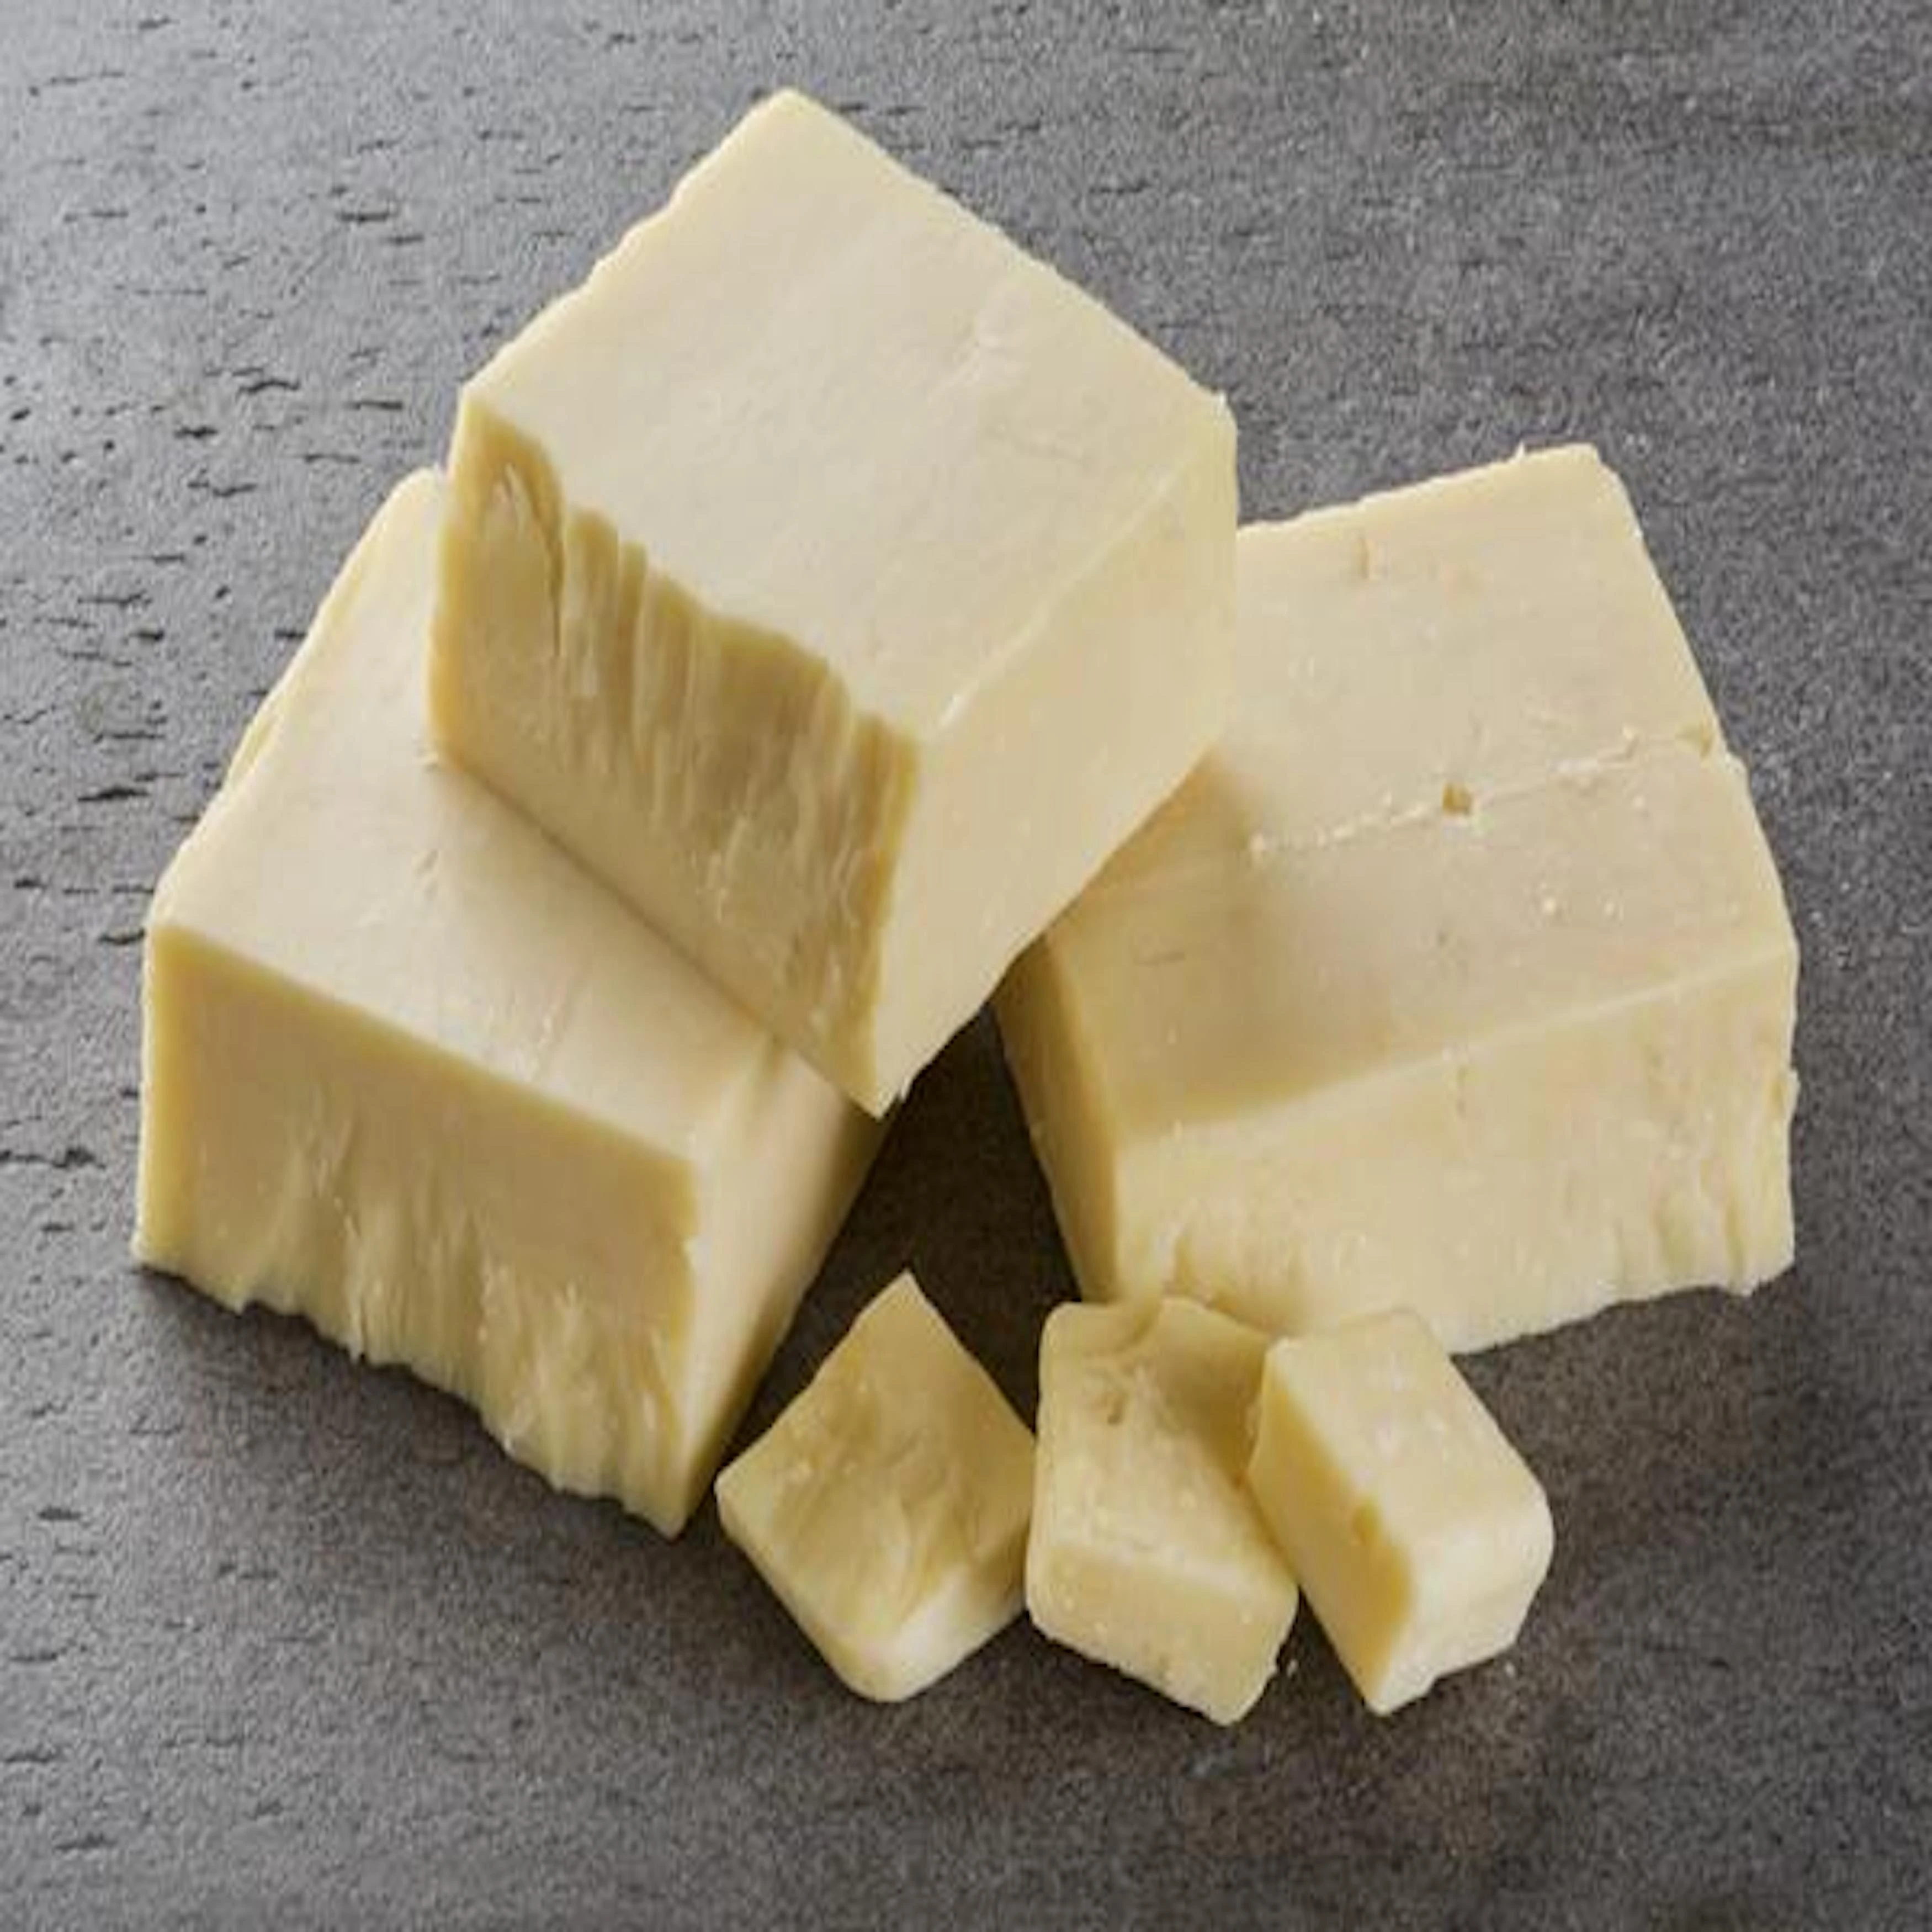 Cheese block made from fresh milk